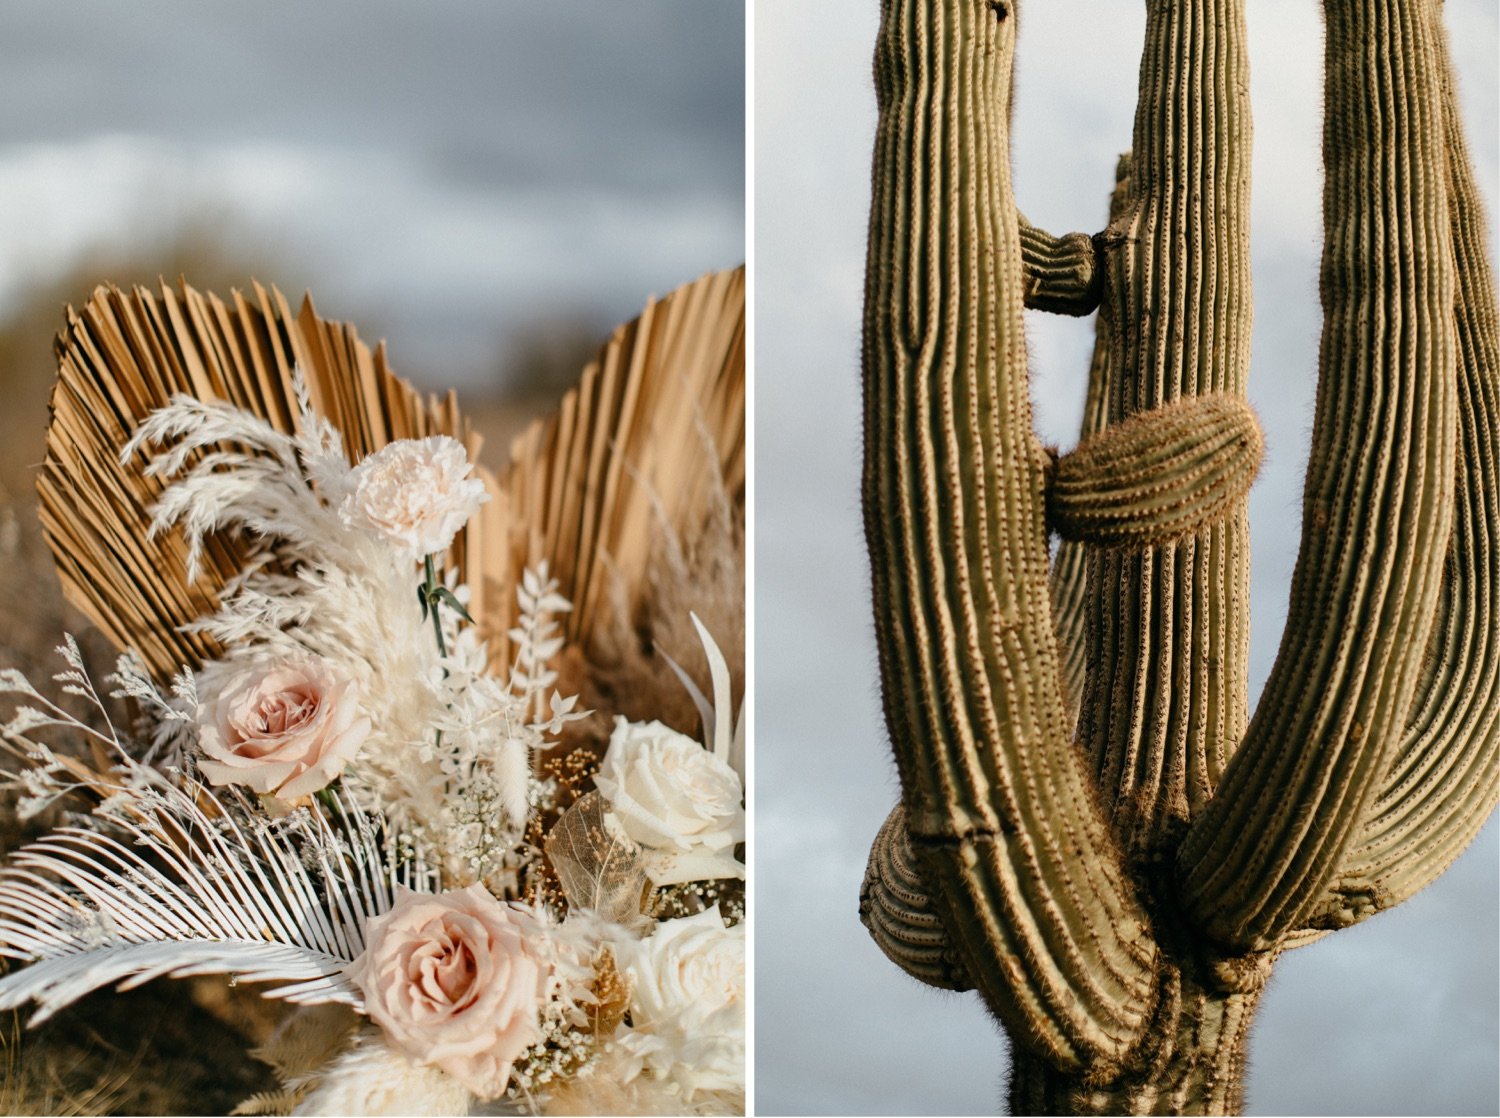 084_floral-installation-in-desert_boho-bride-and-groom-in-desert.jpg